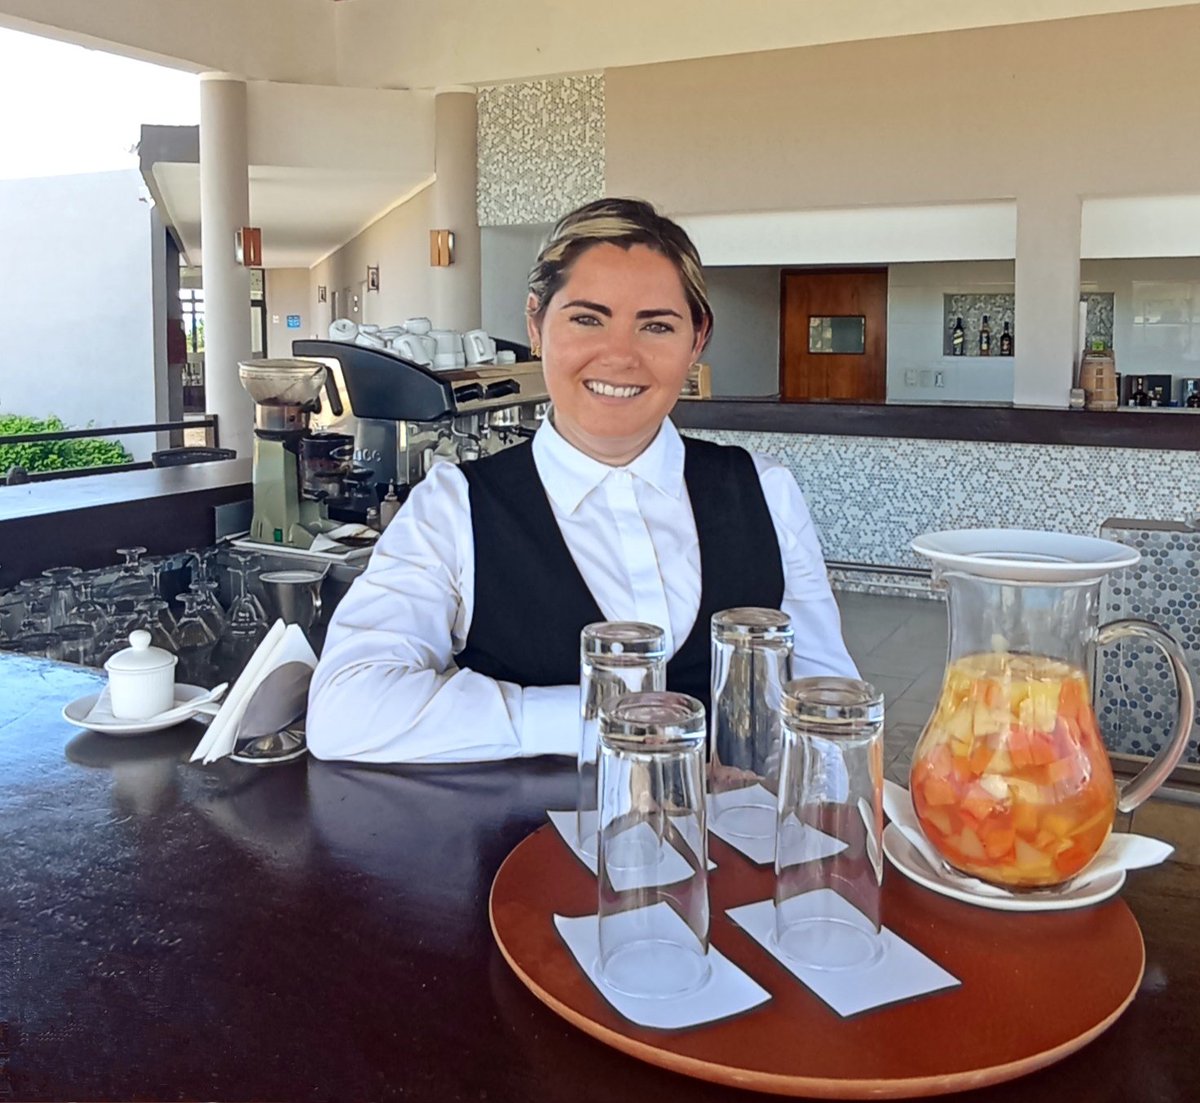 Refresh your day with a delicious drink! 🍹 #GranMarenaCayoCoco #GranCaribeHotels #JardinesdelRey #Cuba